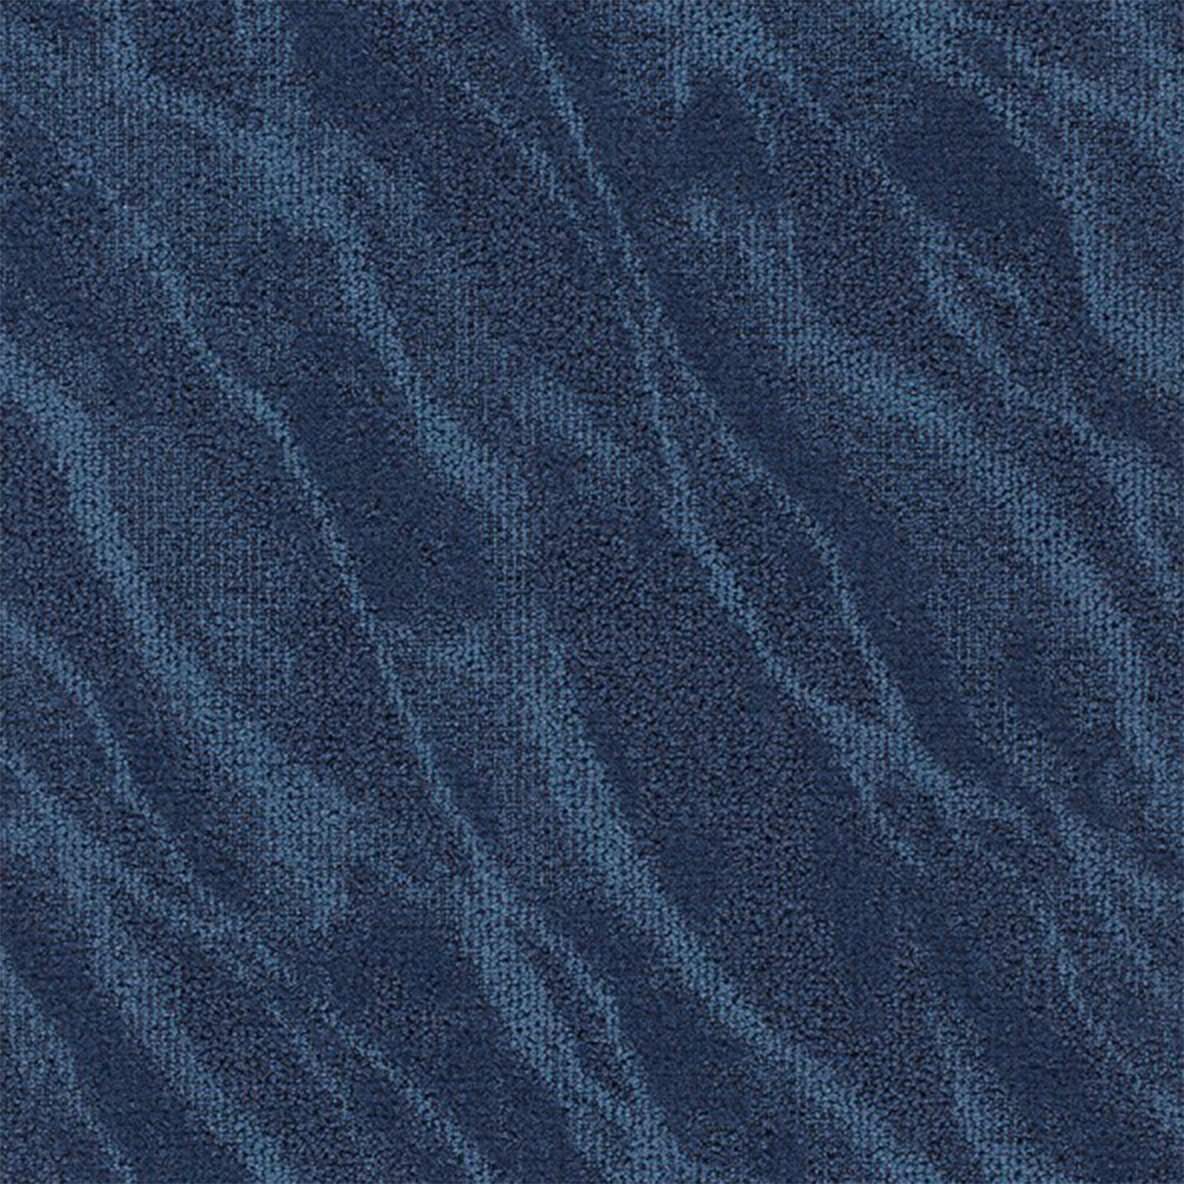 Riverine Commercial Carpet Tile .31 Inch x 50x50 cm per Tile Baltic Blue color close up